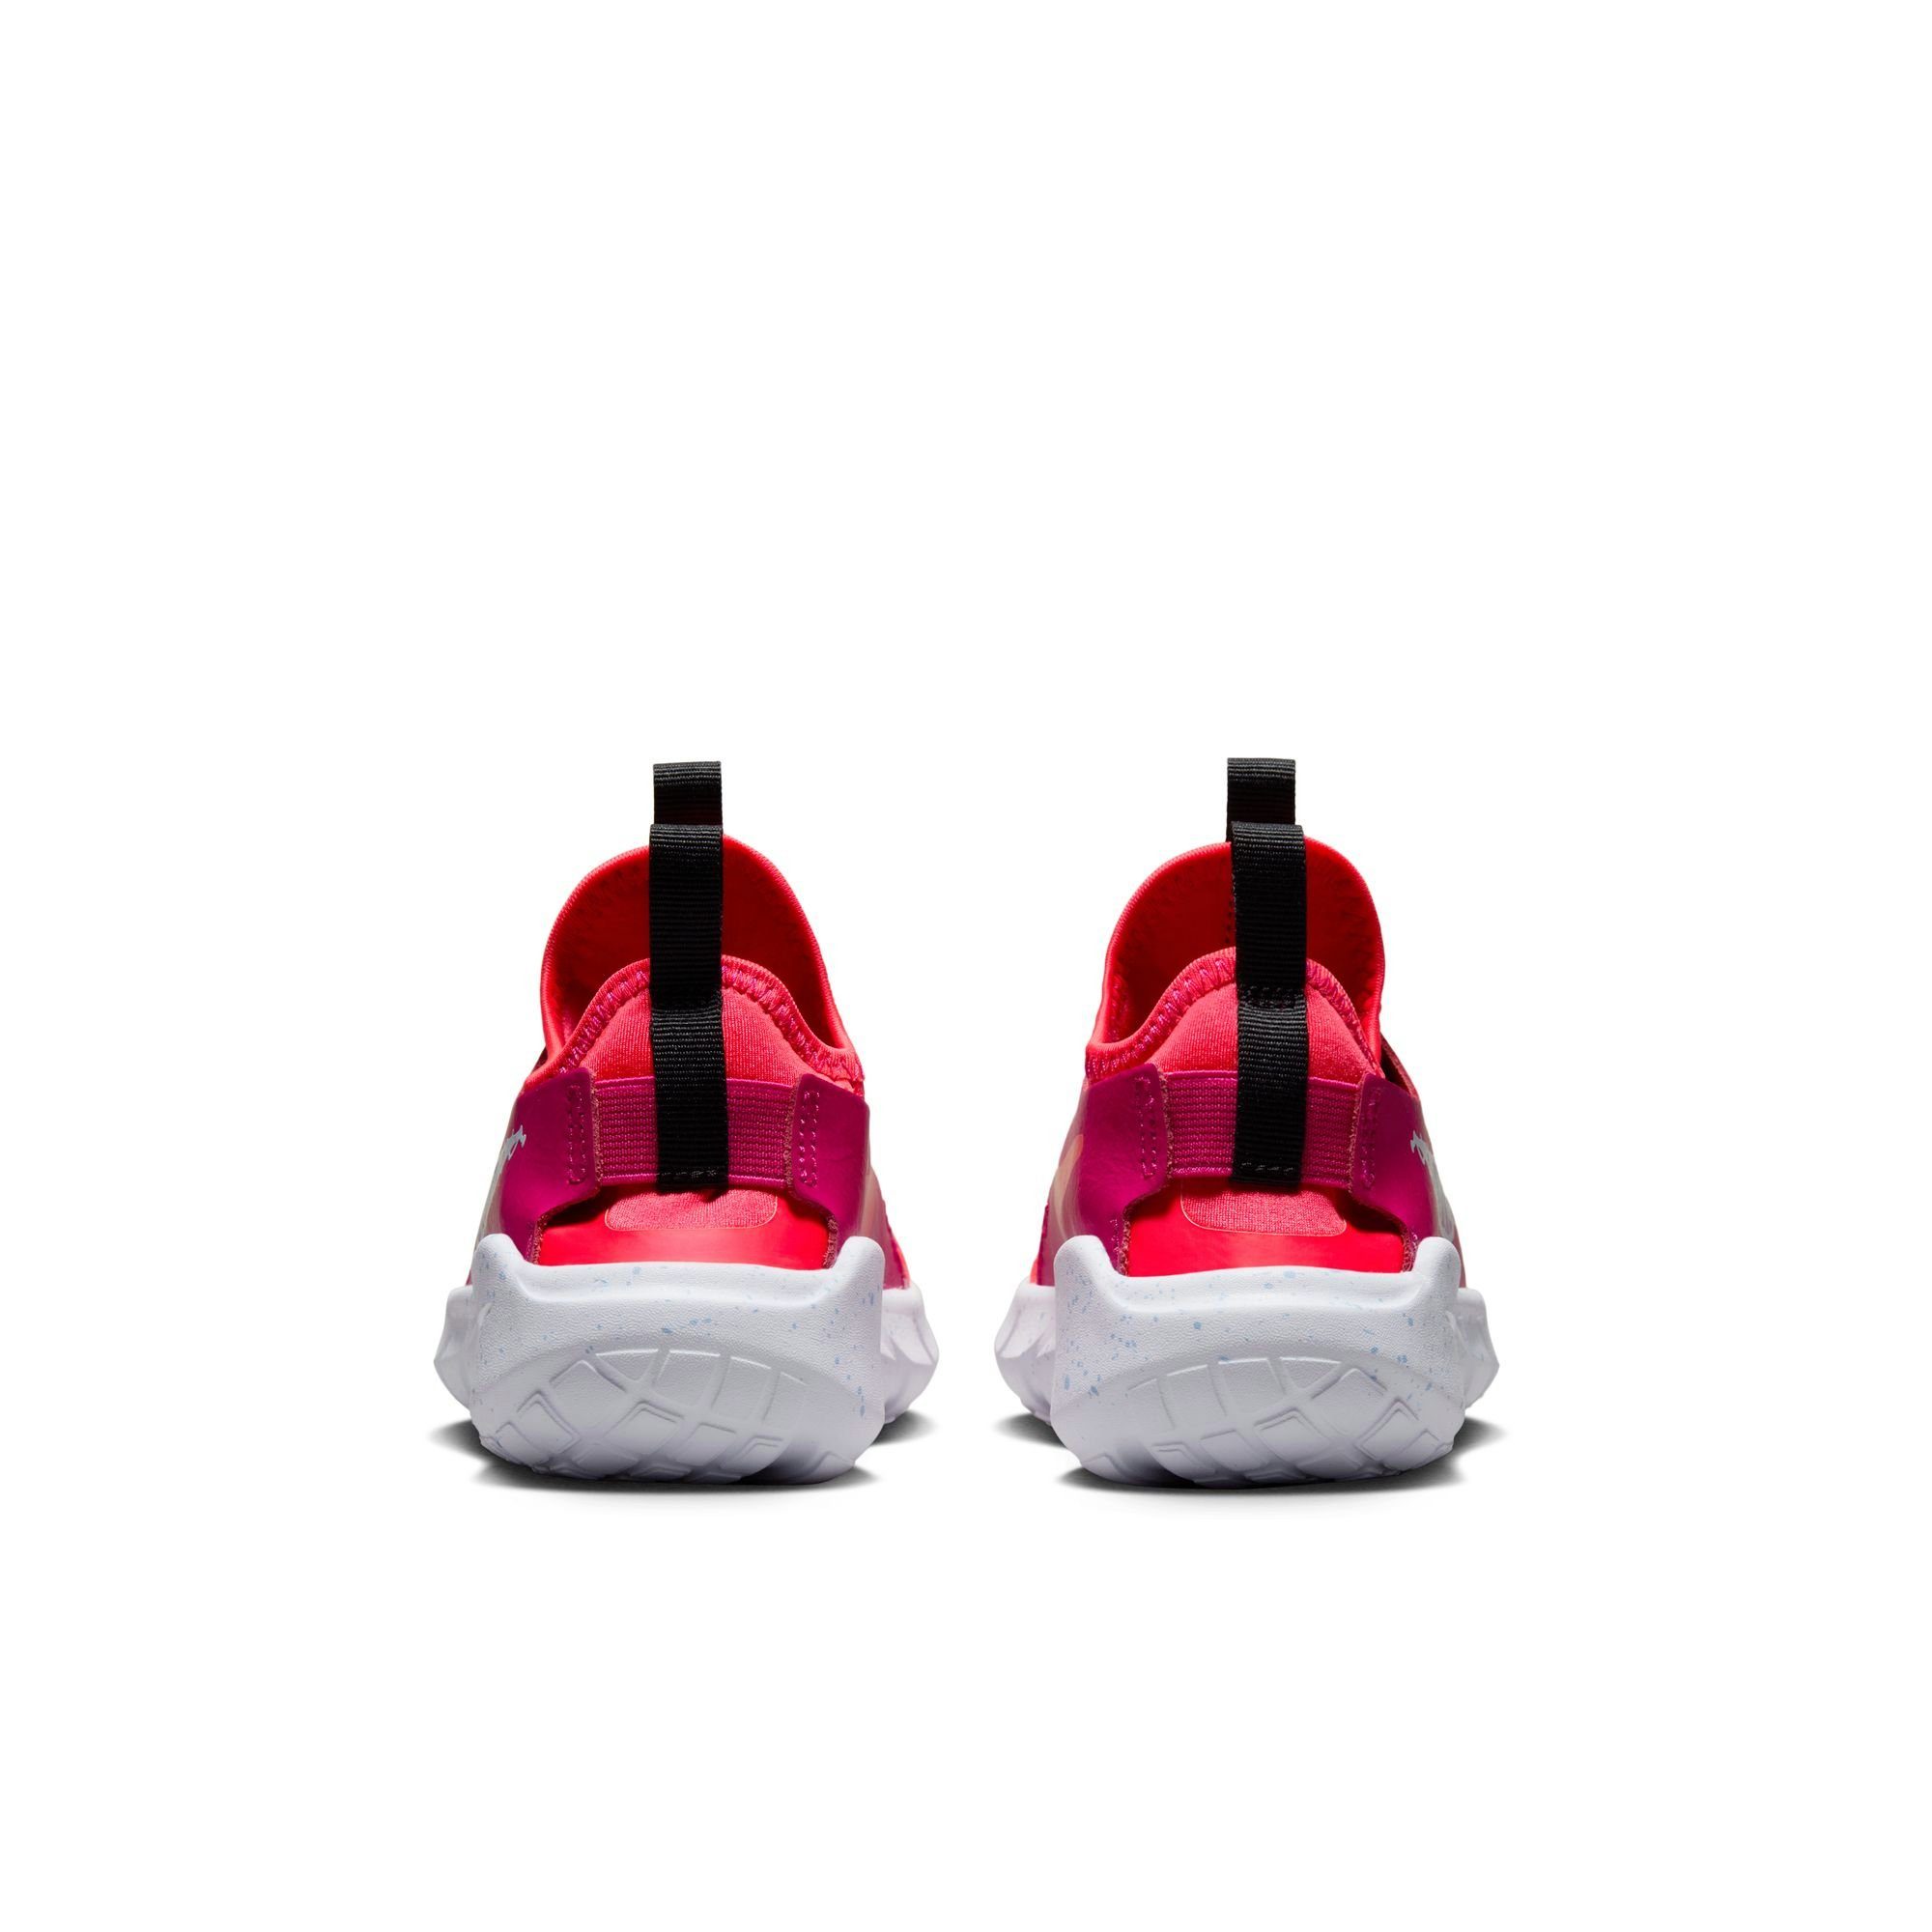 Laufschuh FLEX RUNNER 2 Nike (PS)